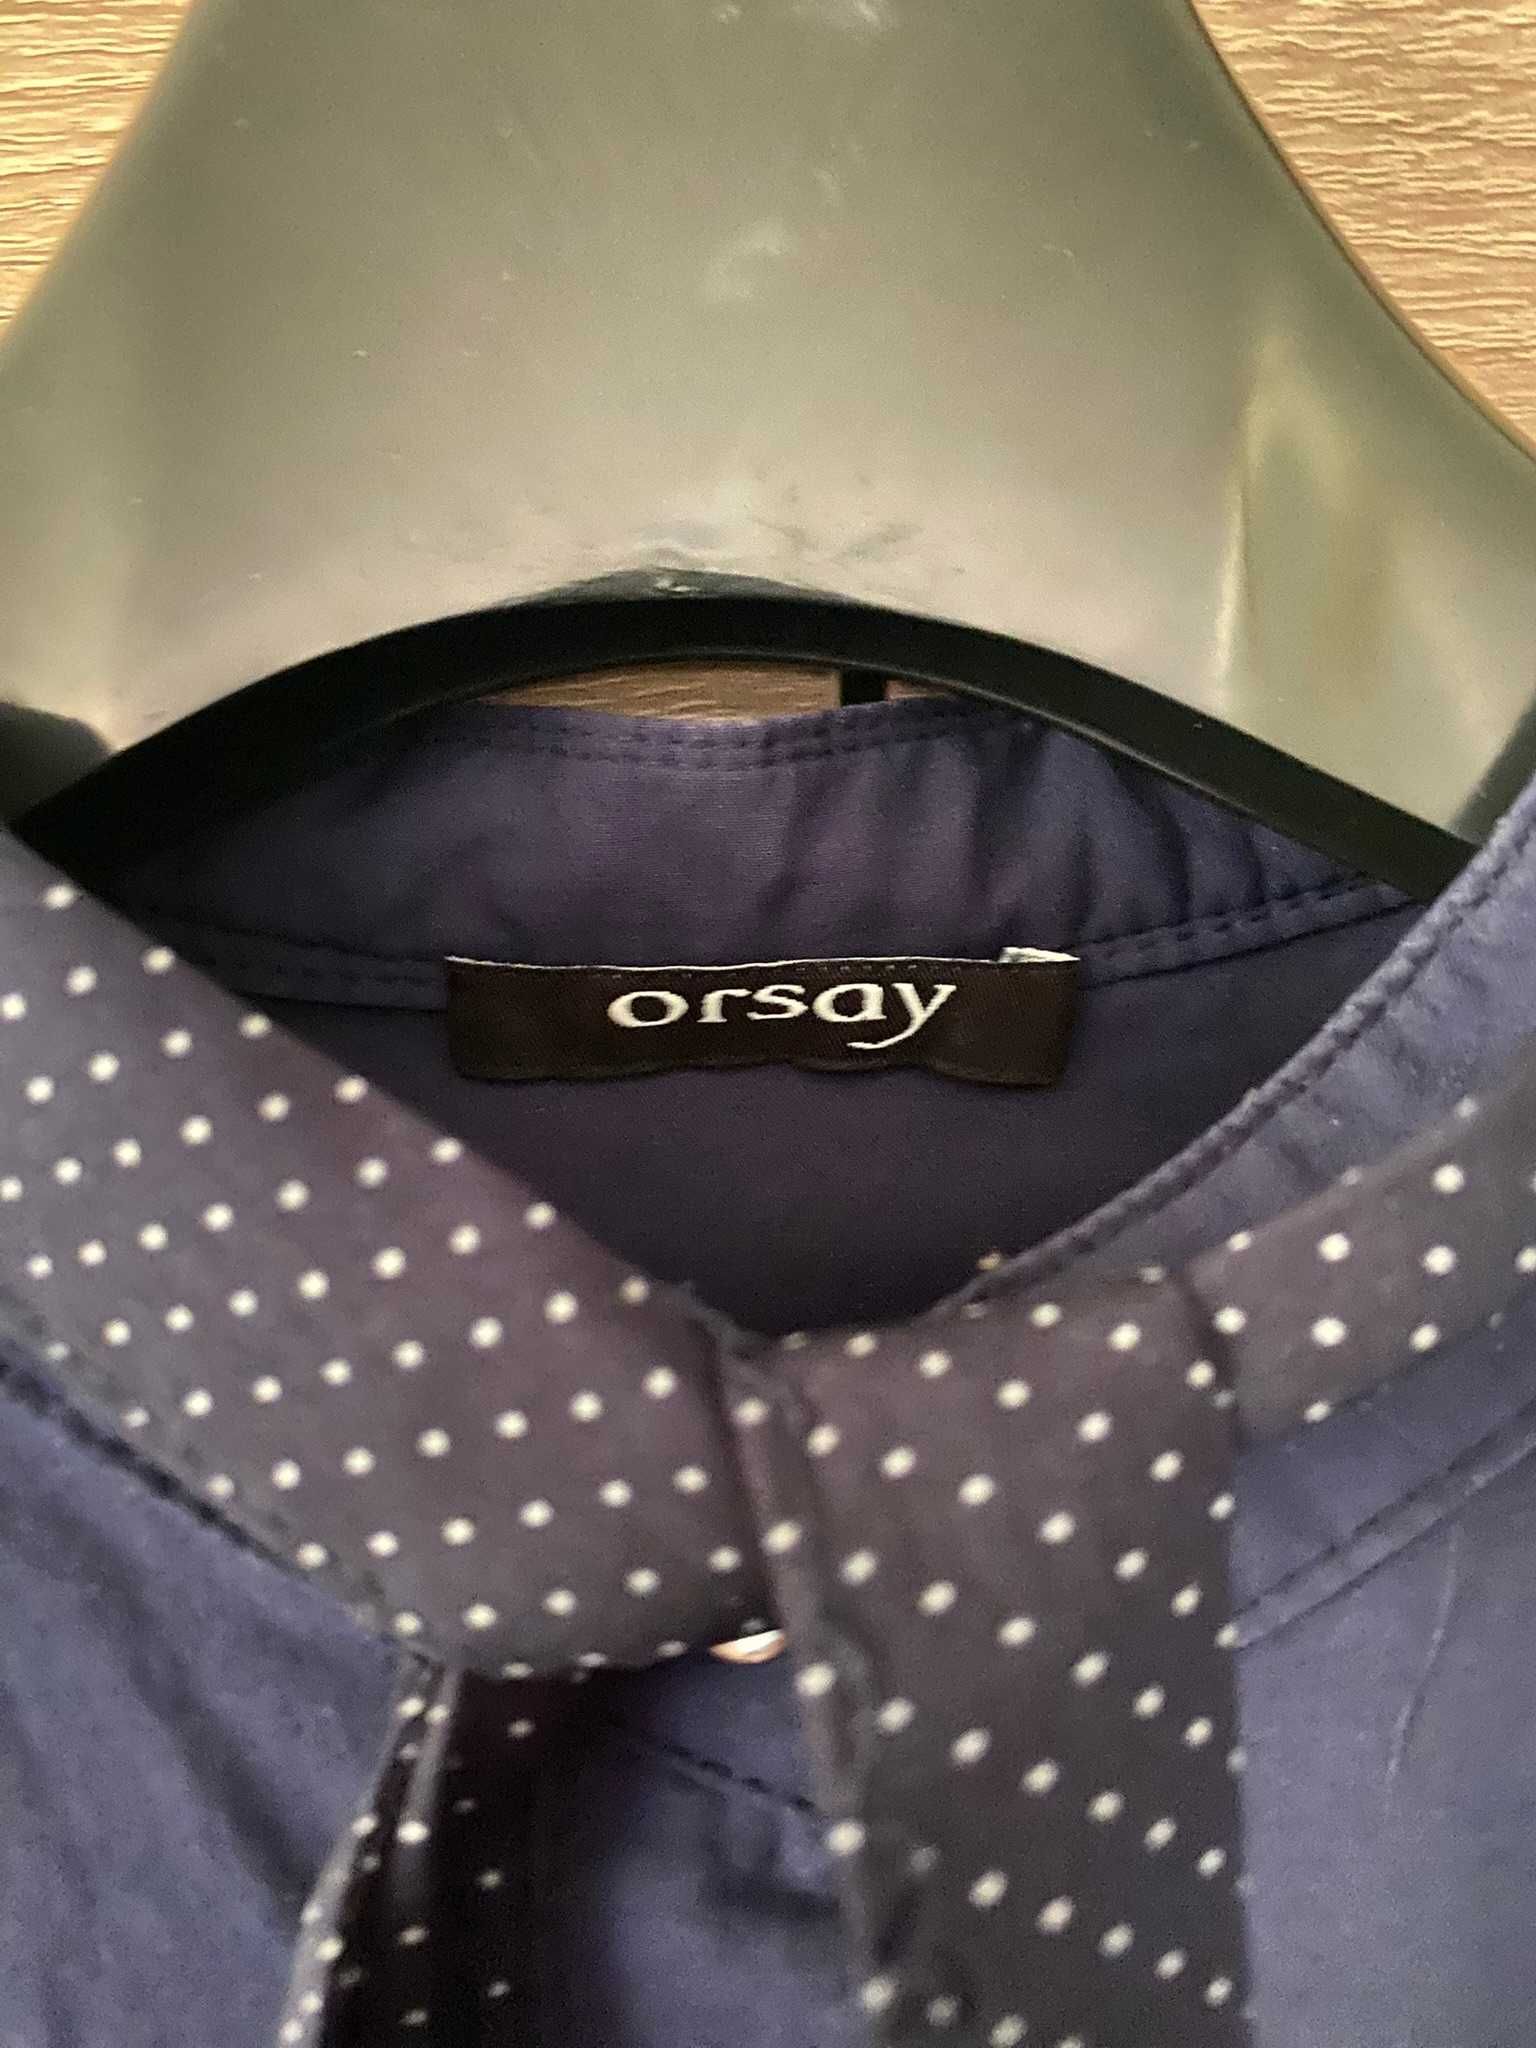 Koszula biurowa elegancka granatowa Orsay XS S wiązana pod szyją